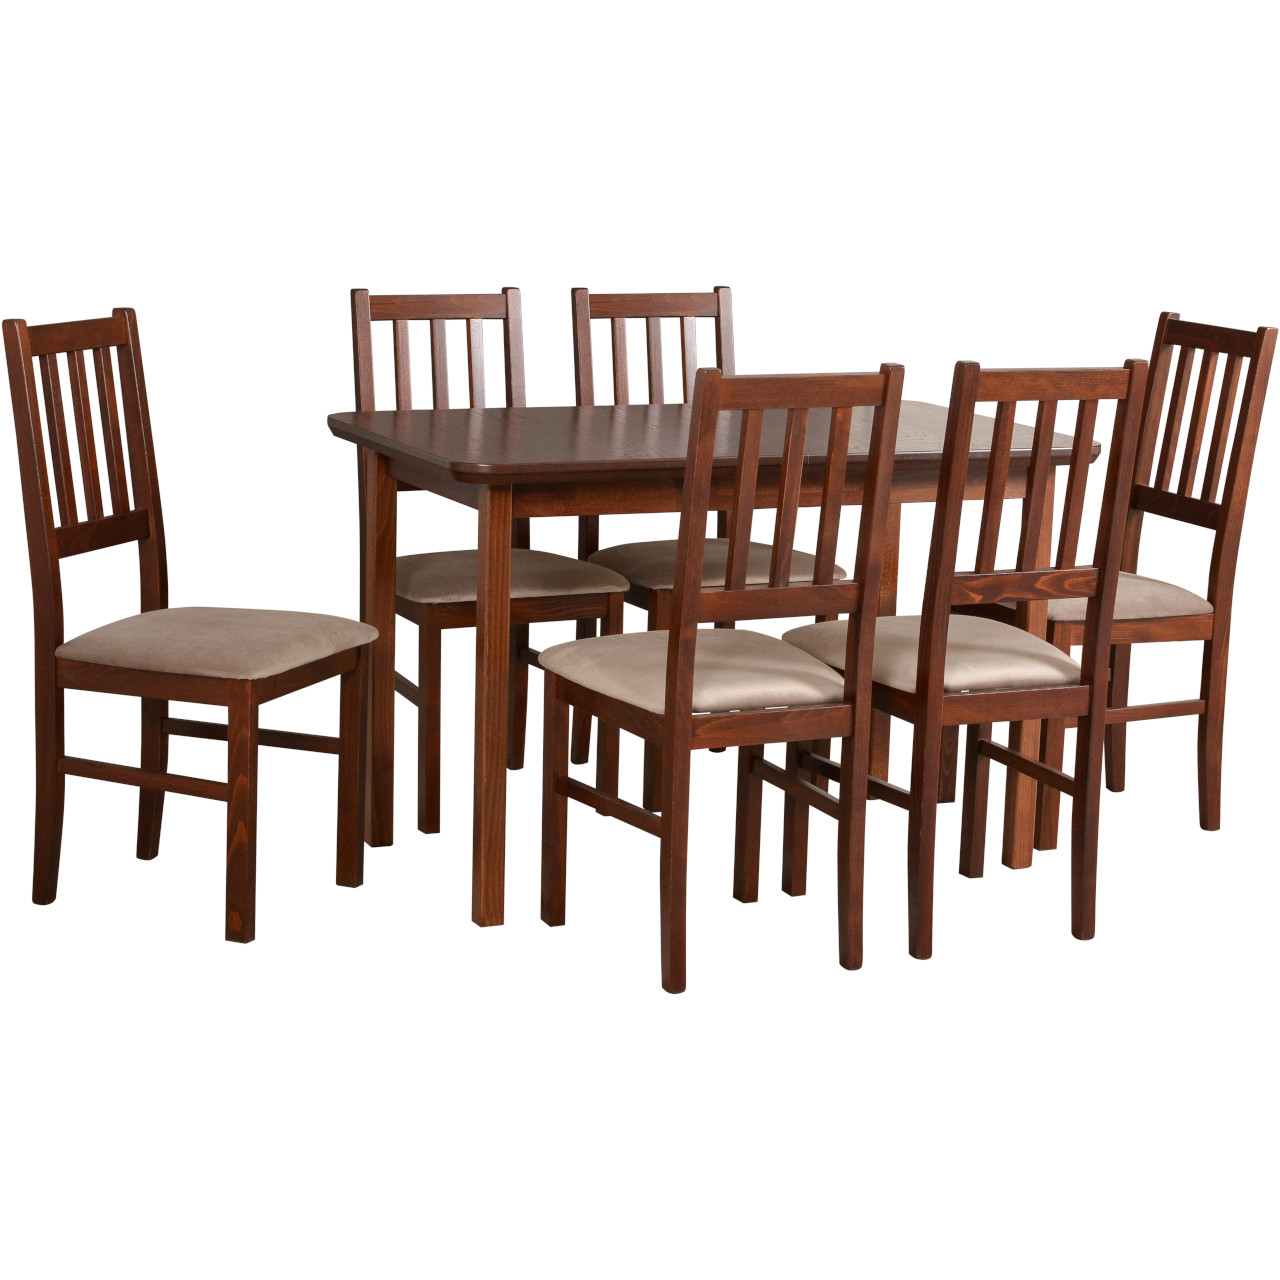 Asztal MAX 4 tölgy furnér / dió + szék BOS 4 (6 db) dió / 27B